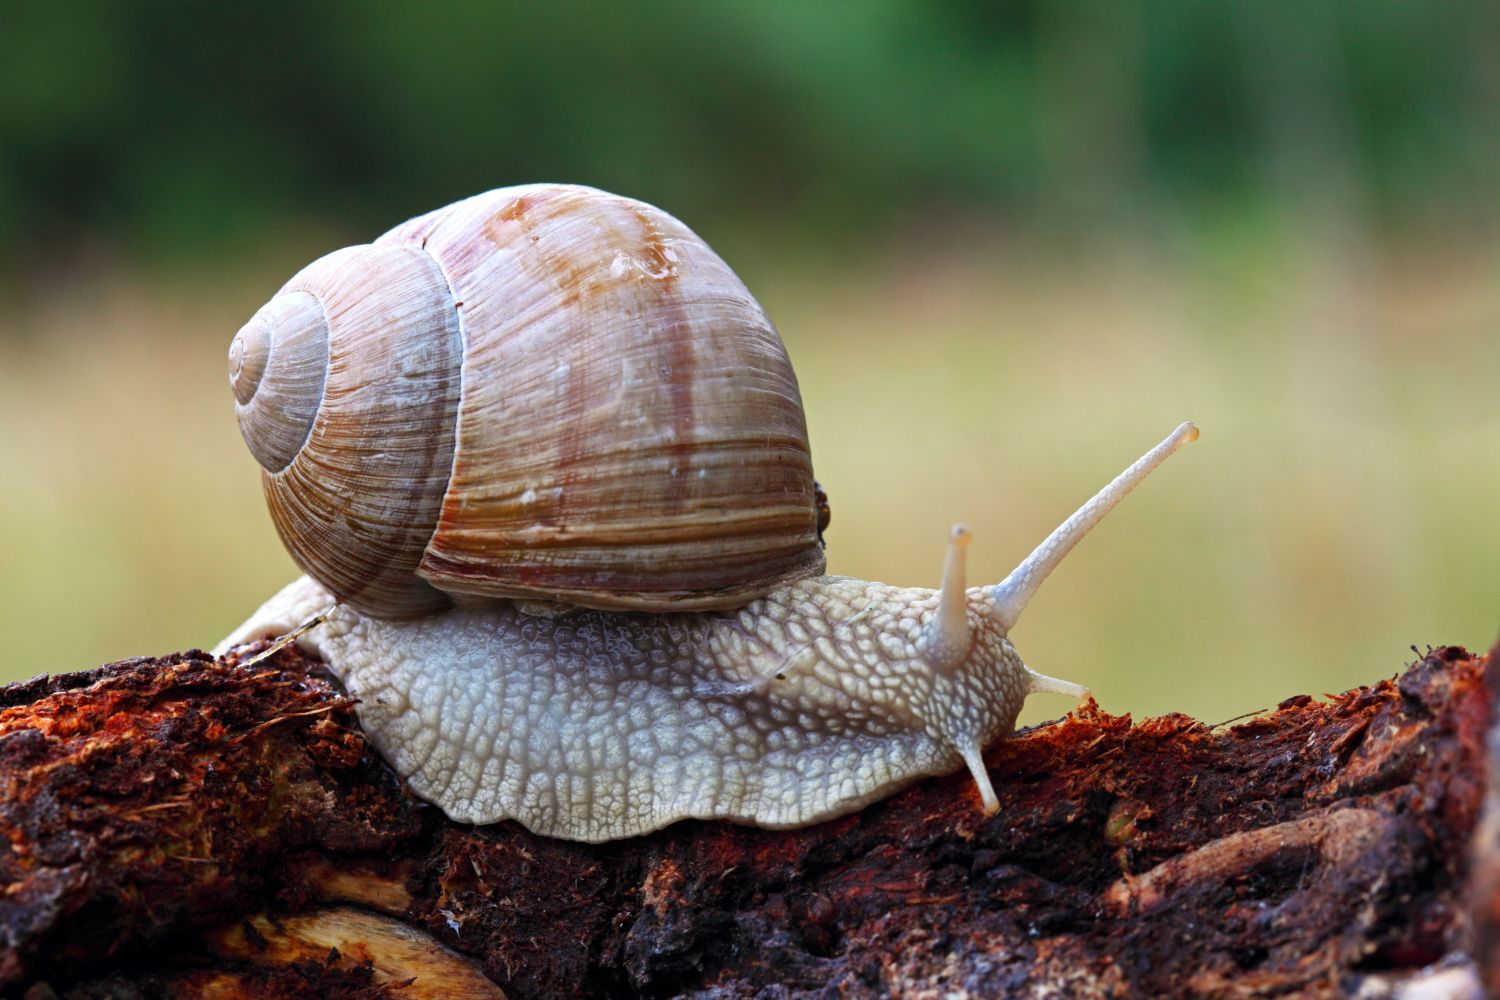 Romain snail in garden